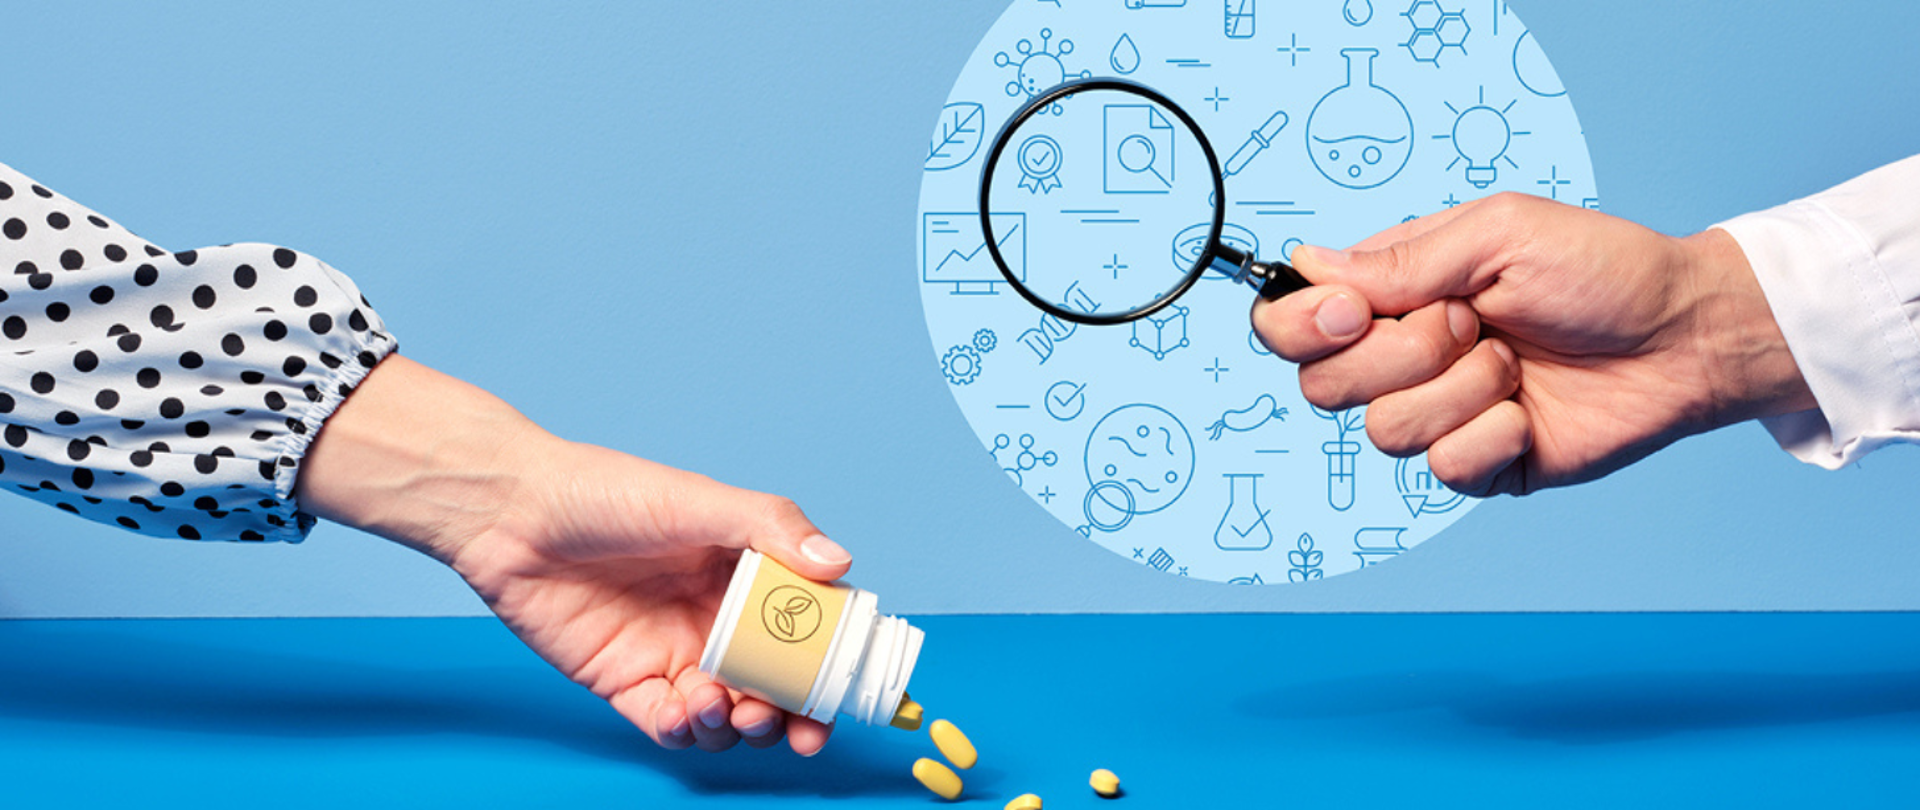 Po lewej stronie grafiki widoczna dłoń trzymająca opakowanie suplementów diety, z którego wysypują się żółte tabletki, po prawej stronie widoczna dłoń trzymająca lupę. 